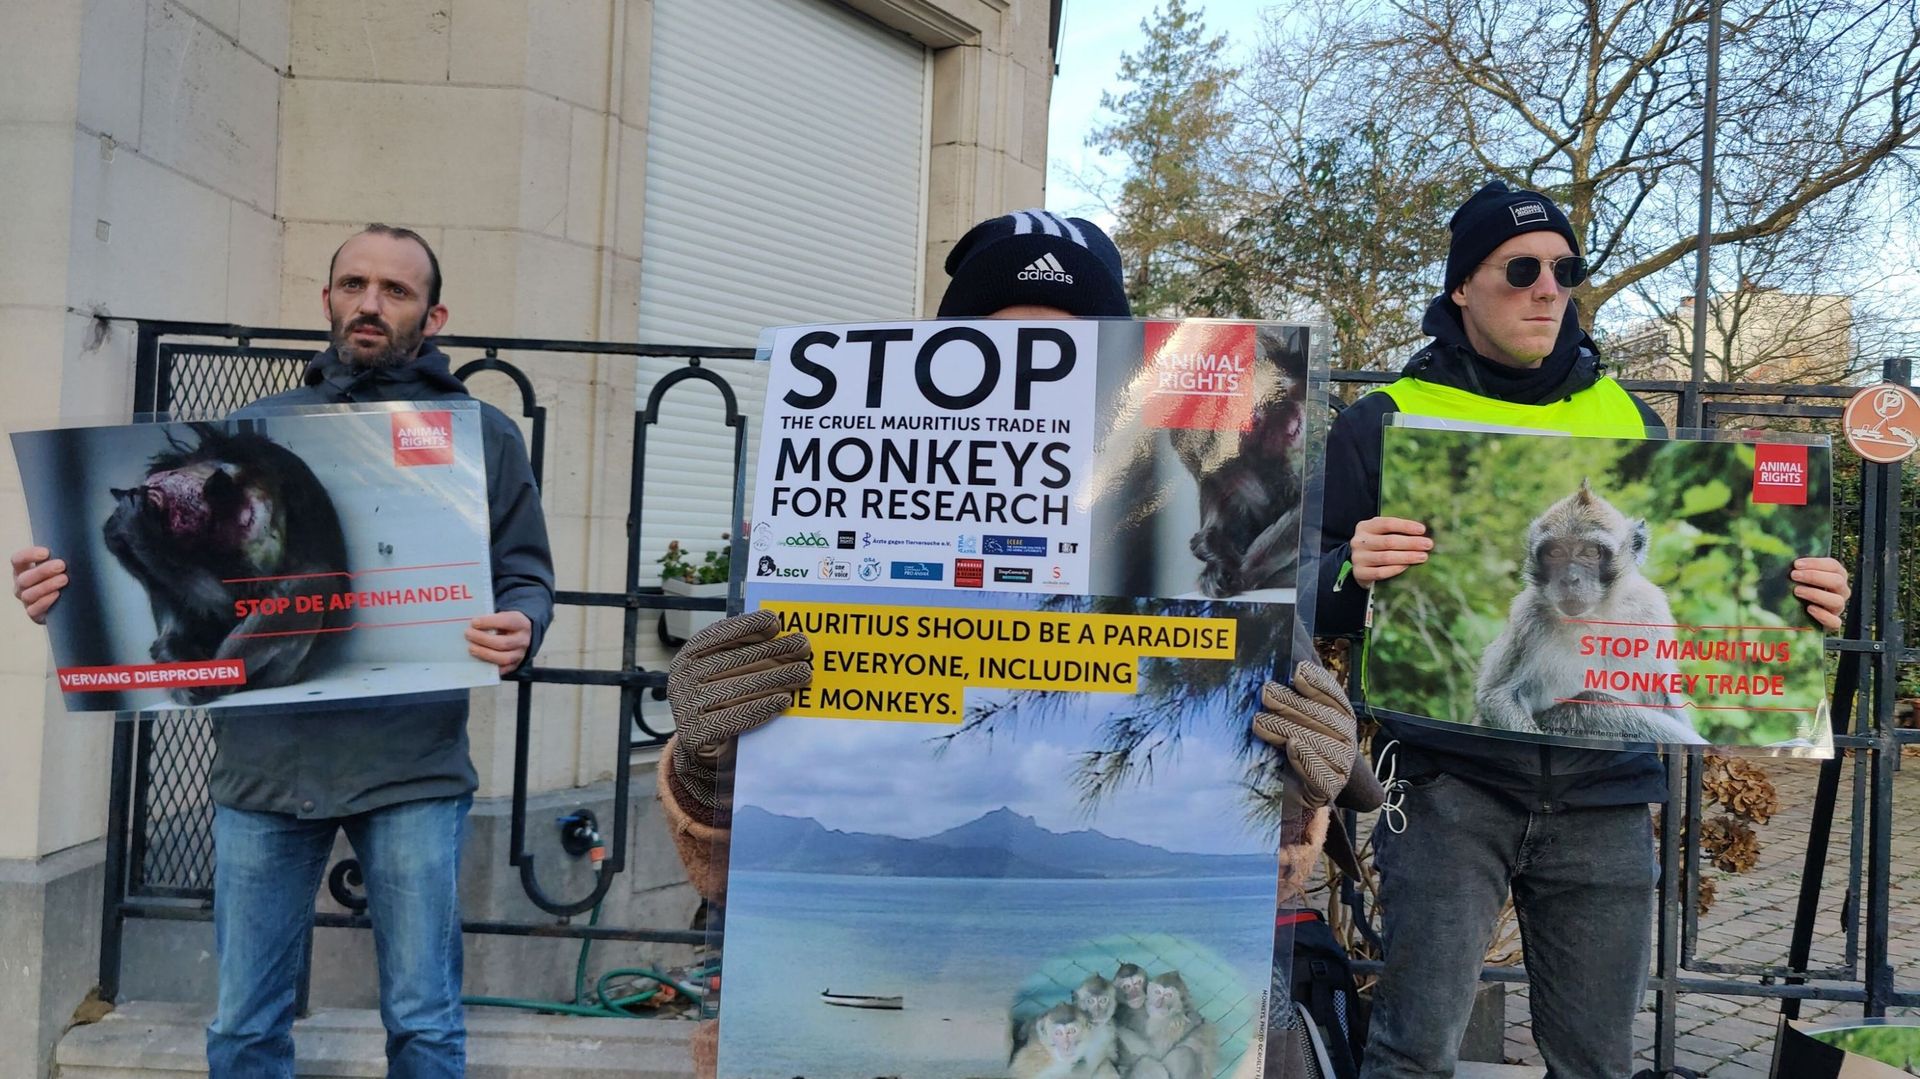 Une marche de protestation des droits des animaux contre le commerce des singes pour l'expérimentation animale, devant l'ambassade de Maurice, à Bruxelles, samedi 11 décembre 2021.